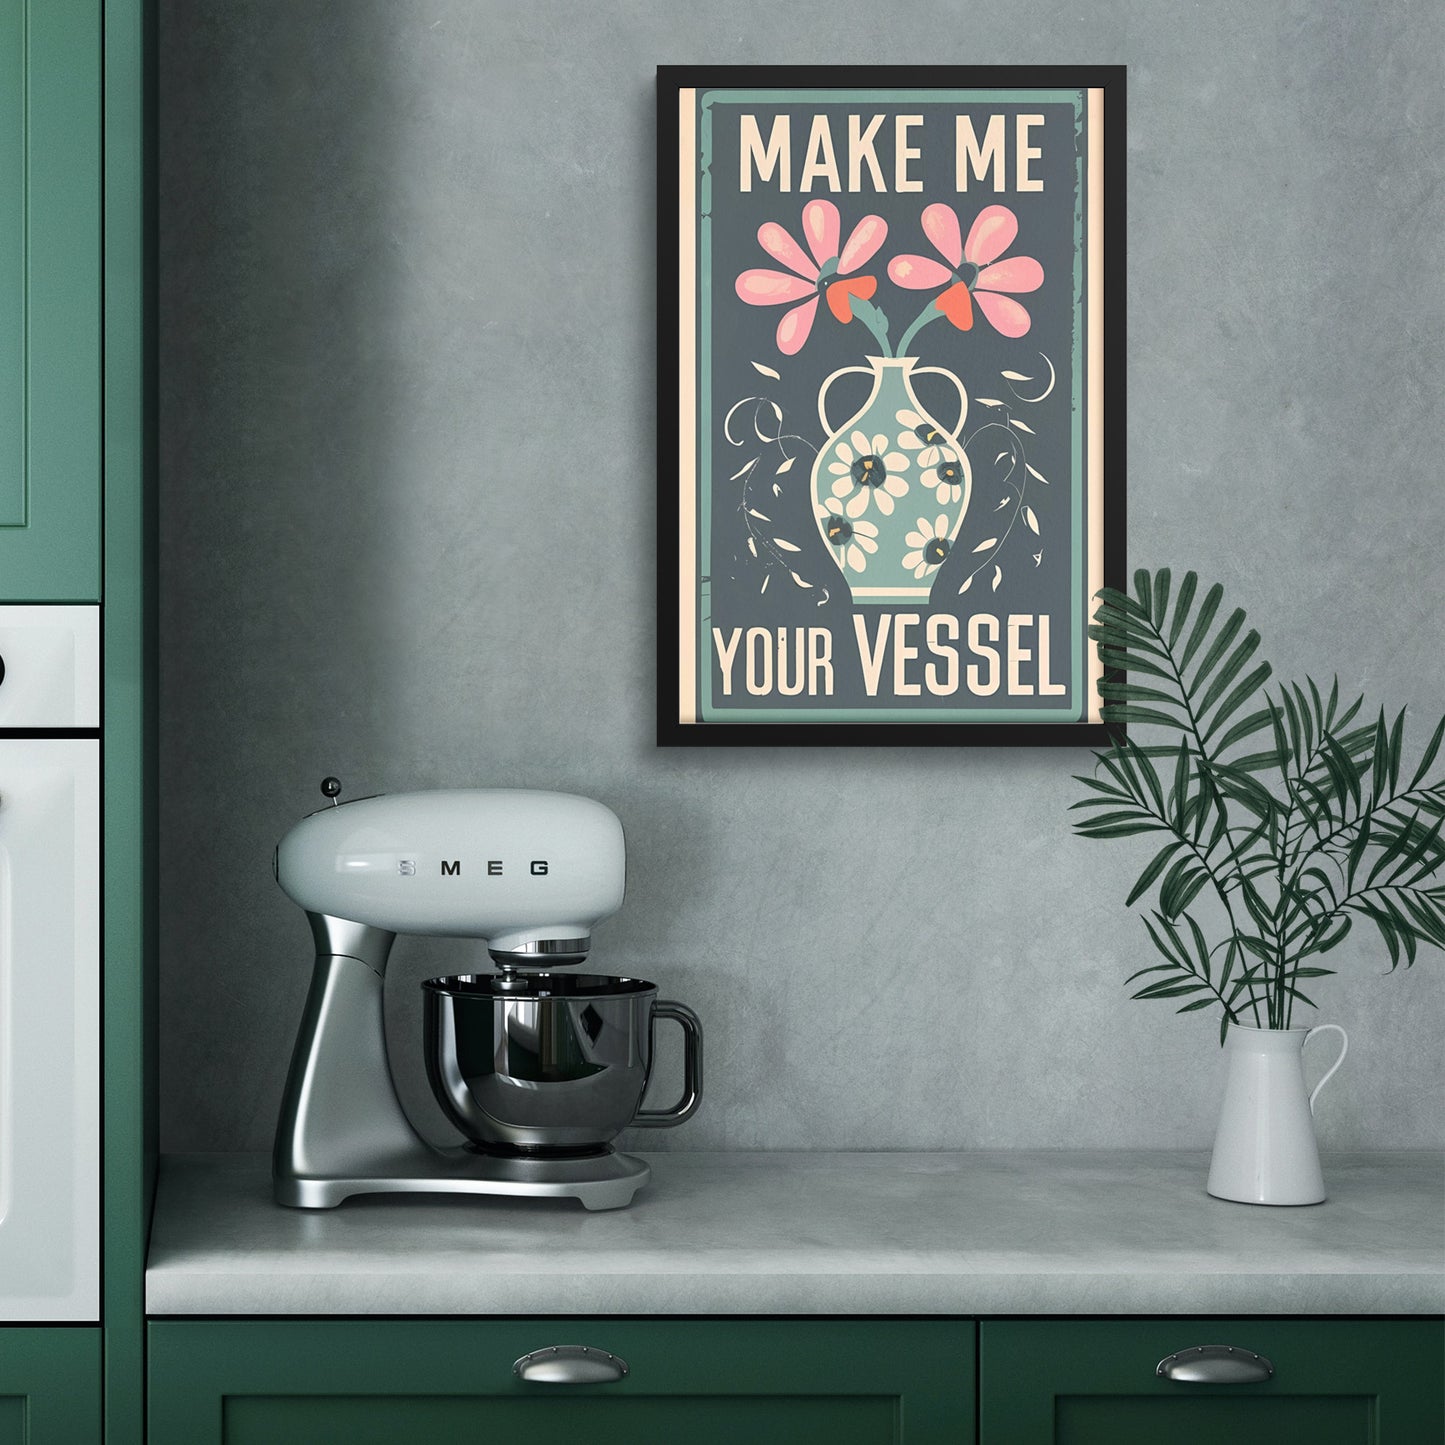 Make Me Your Vessel Retro Style Vase Floral Framed Poster